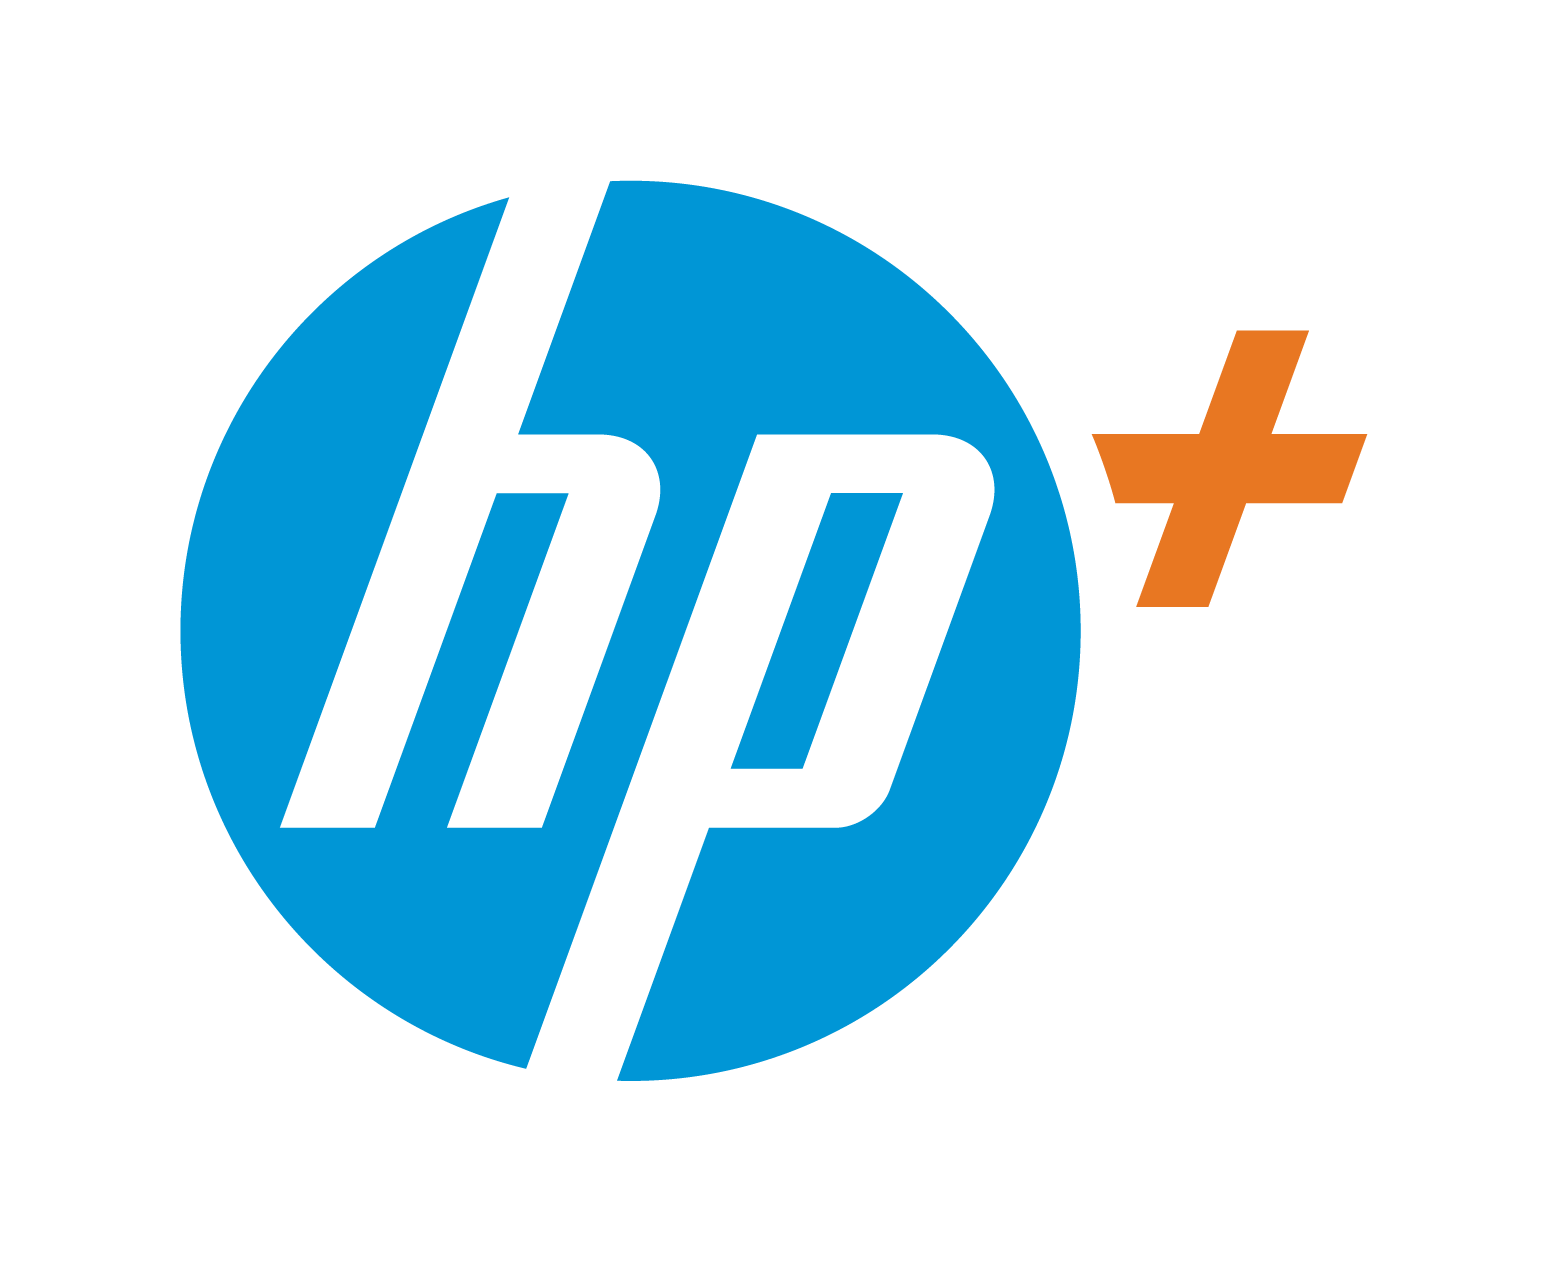 Atramentová tlačiareň HP OfficeJet 8012e All-in-One